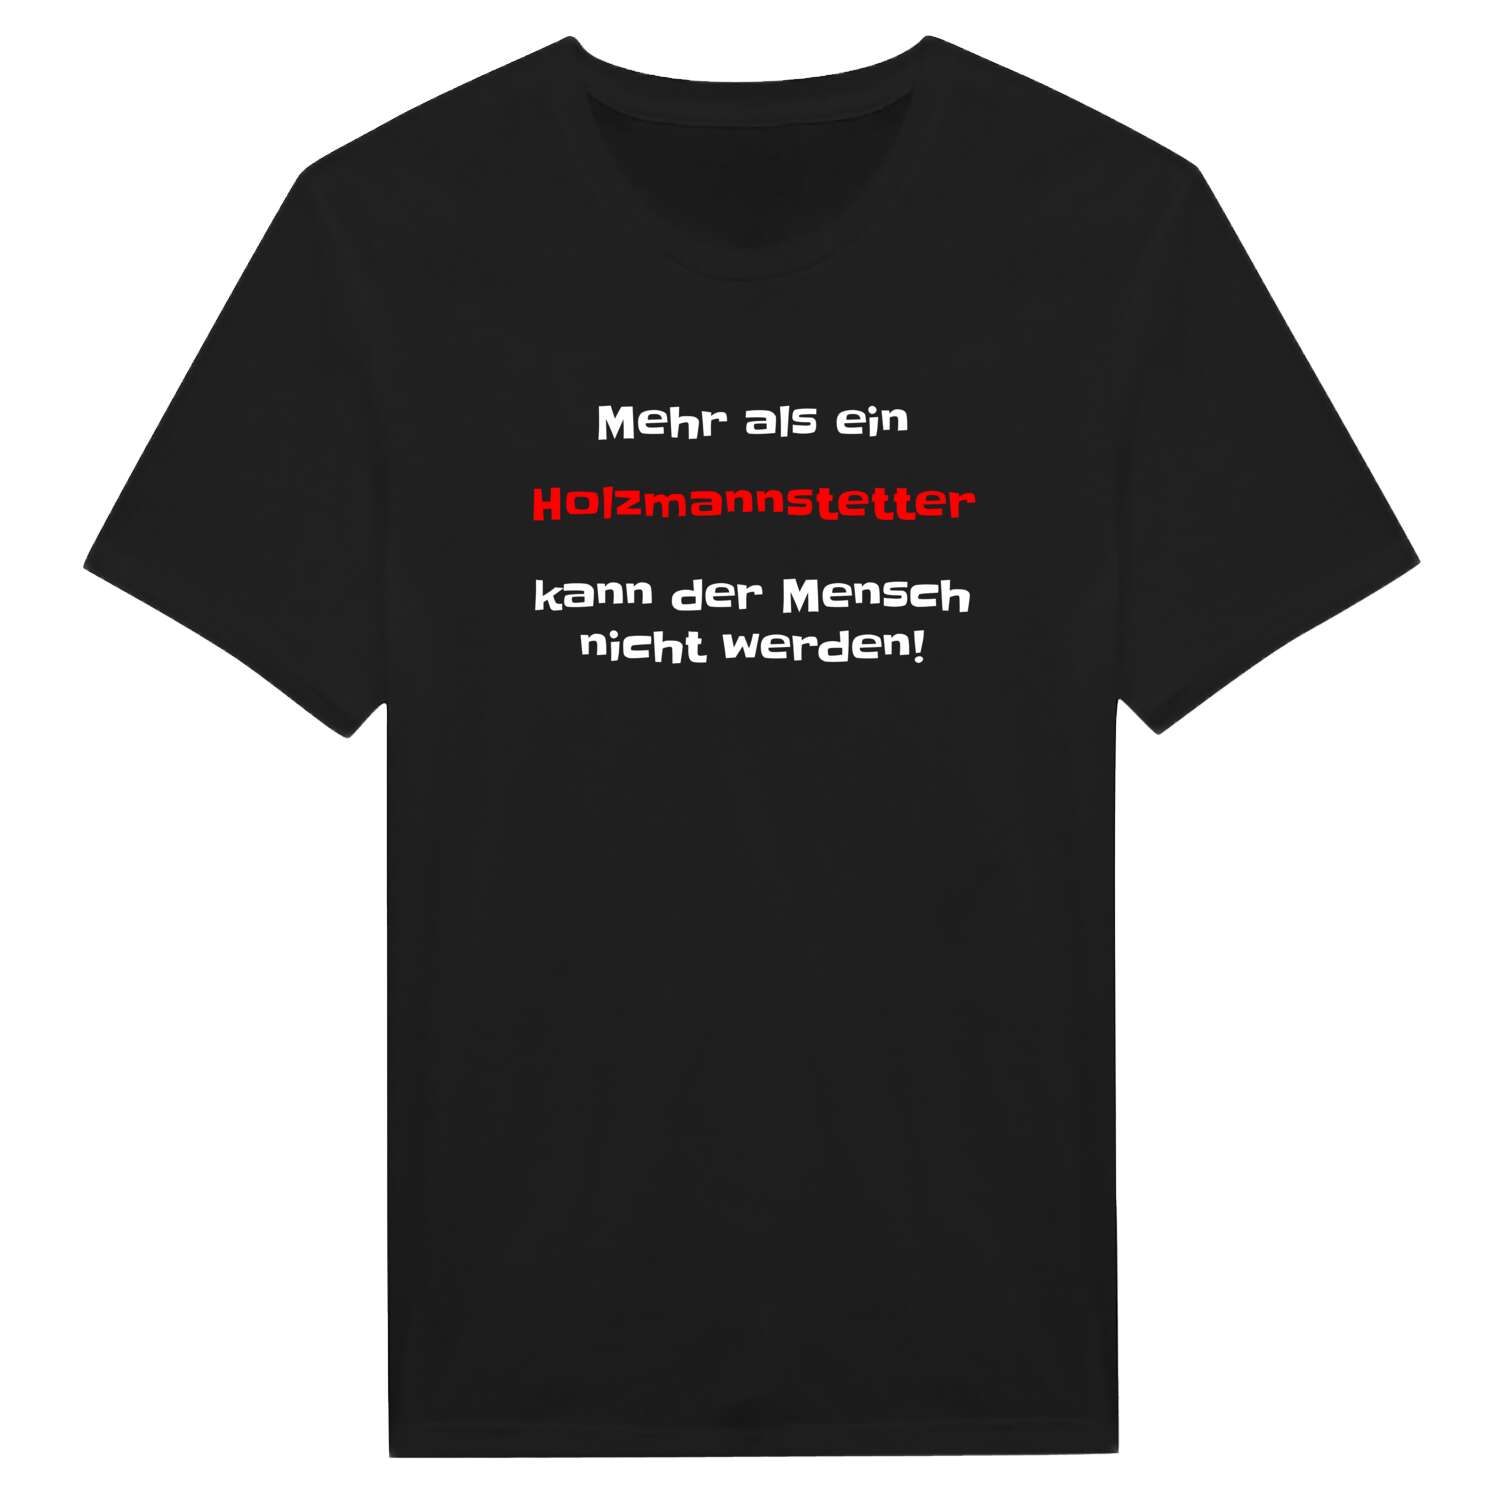 Holzmannstett T-Shirt »Mehr als ein«